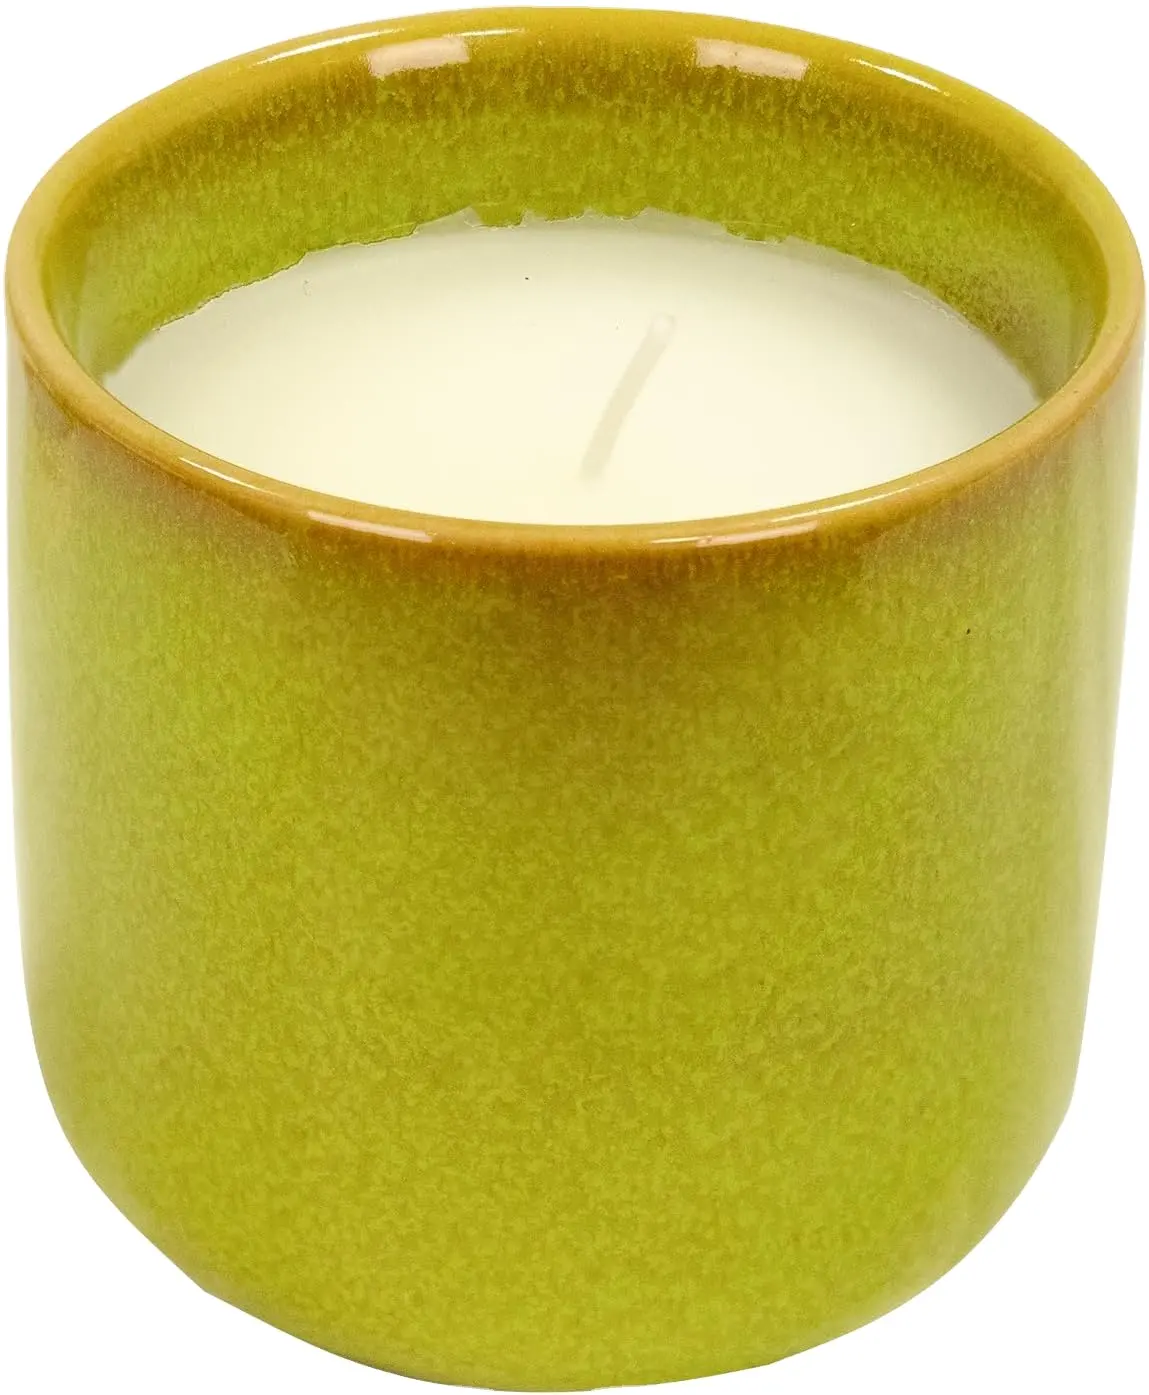 Venta caliente tarro de cerámica personalizado contenedor de velas decorativas regalo para hombres y mujeres